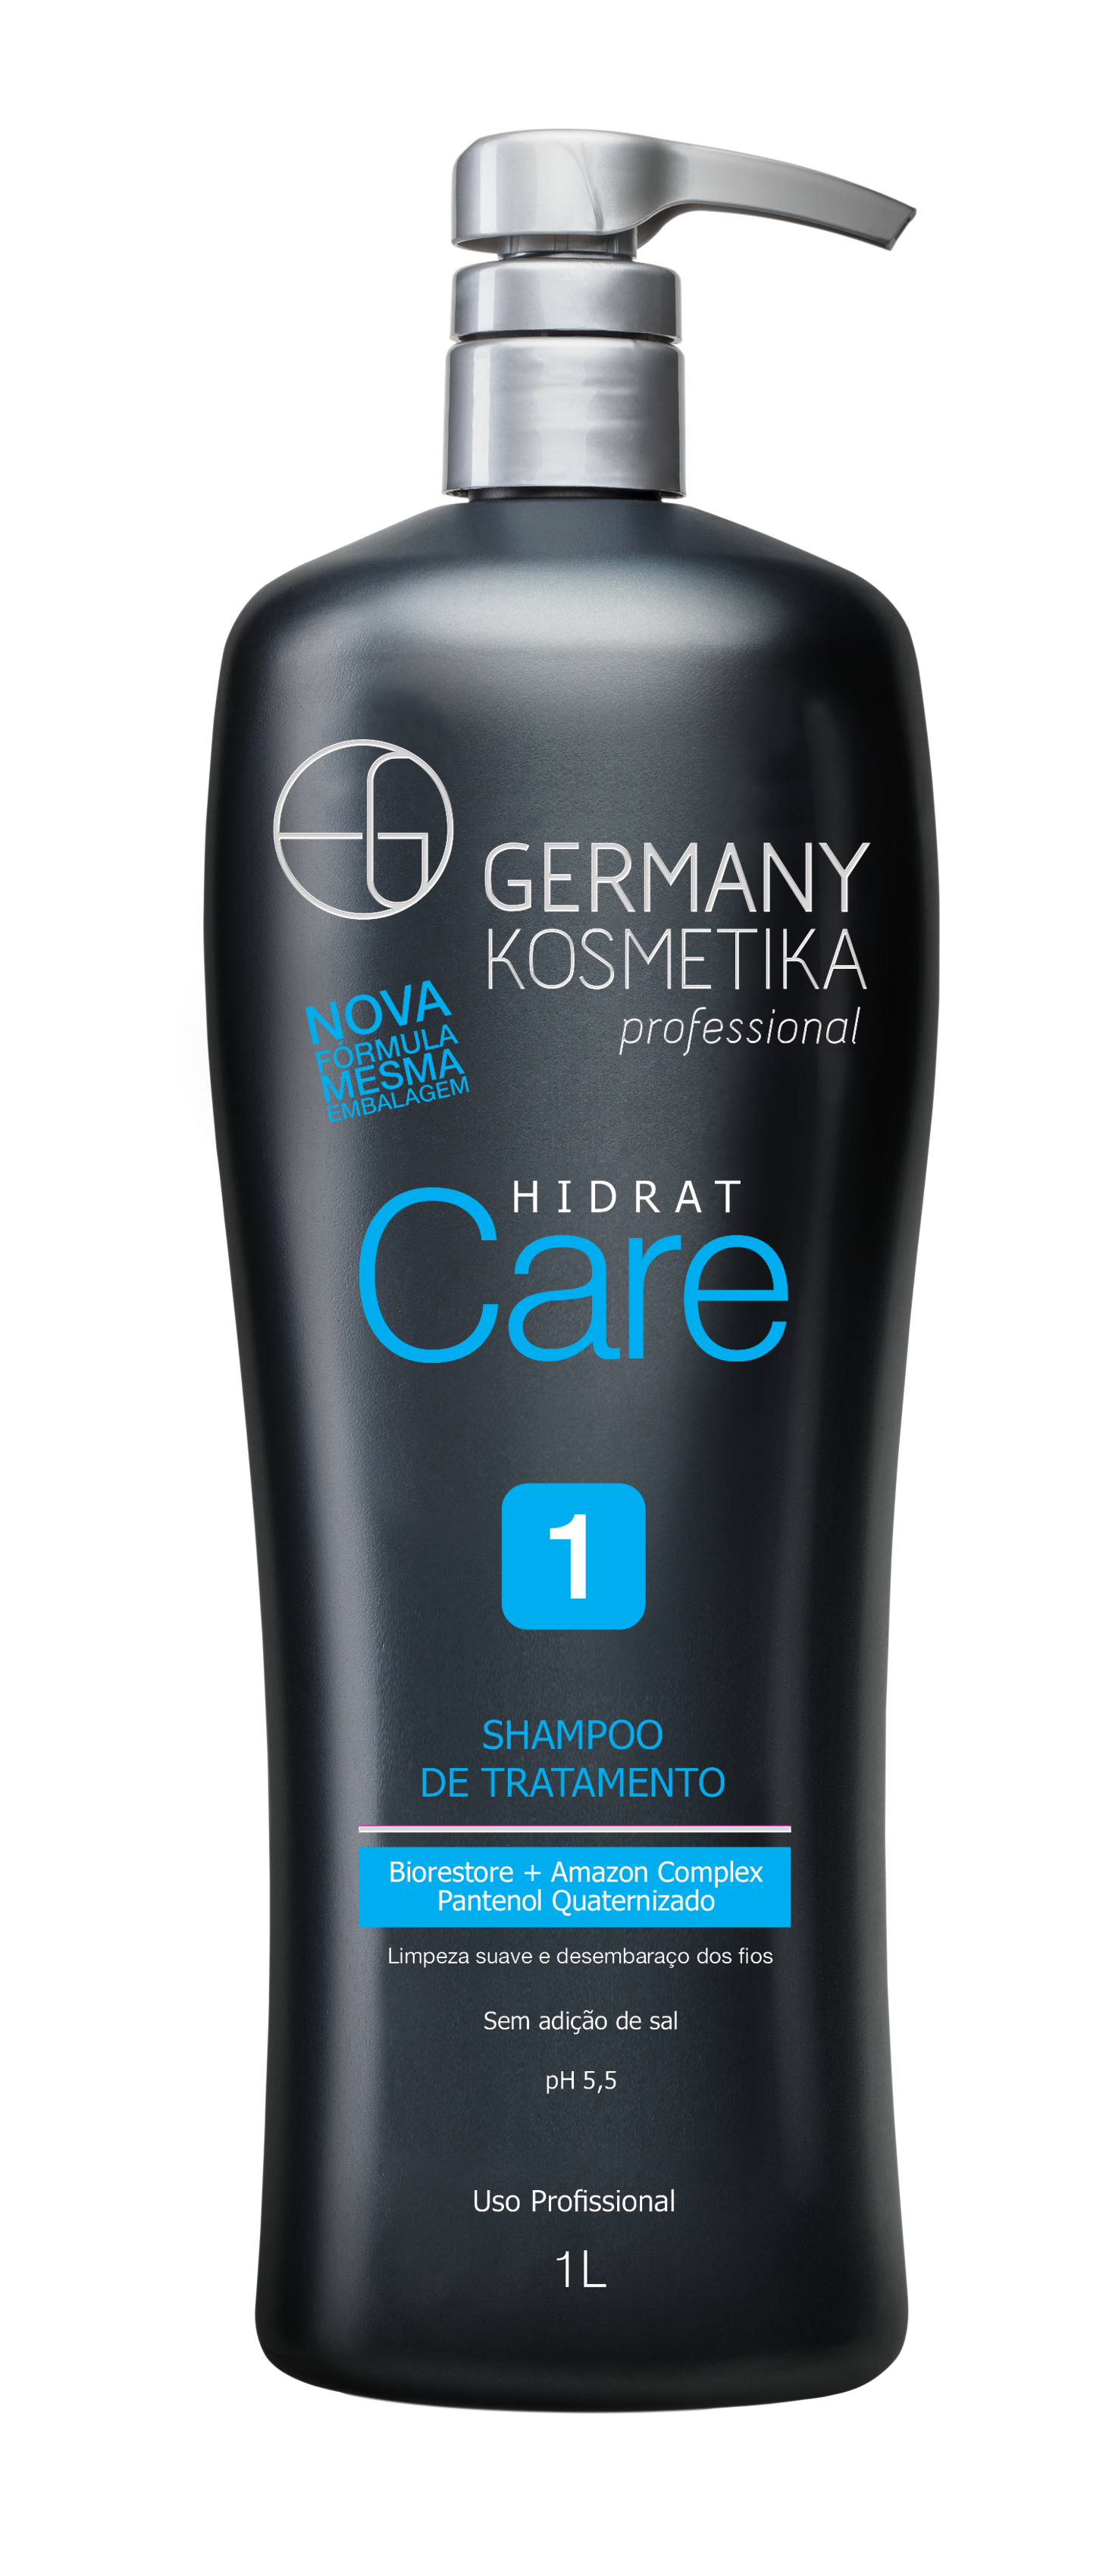 GERMANY Hidrat Care 1 Shampoo Tratamento